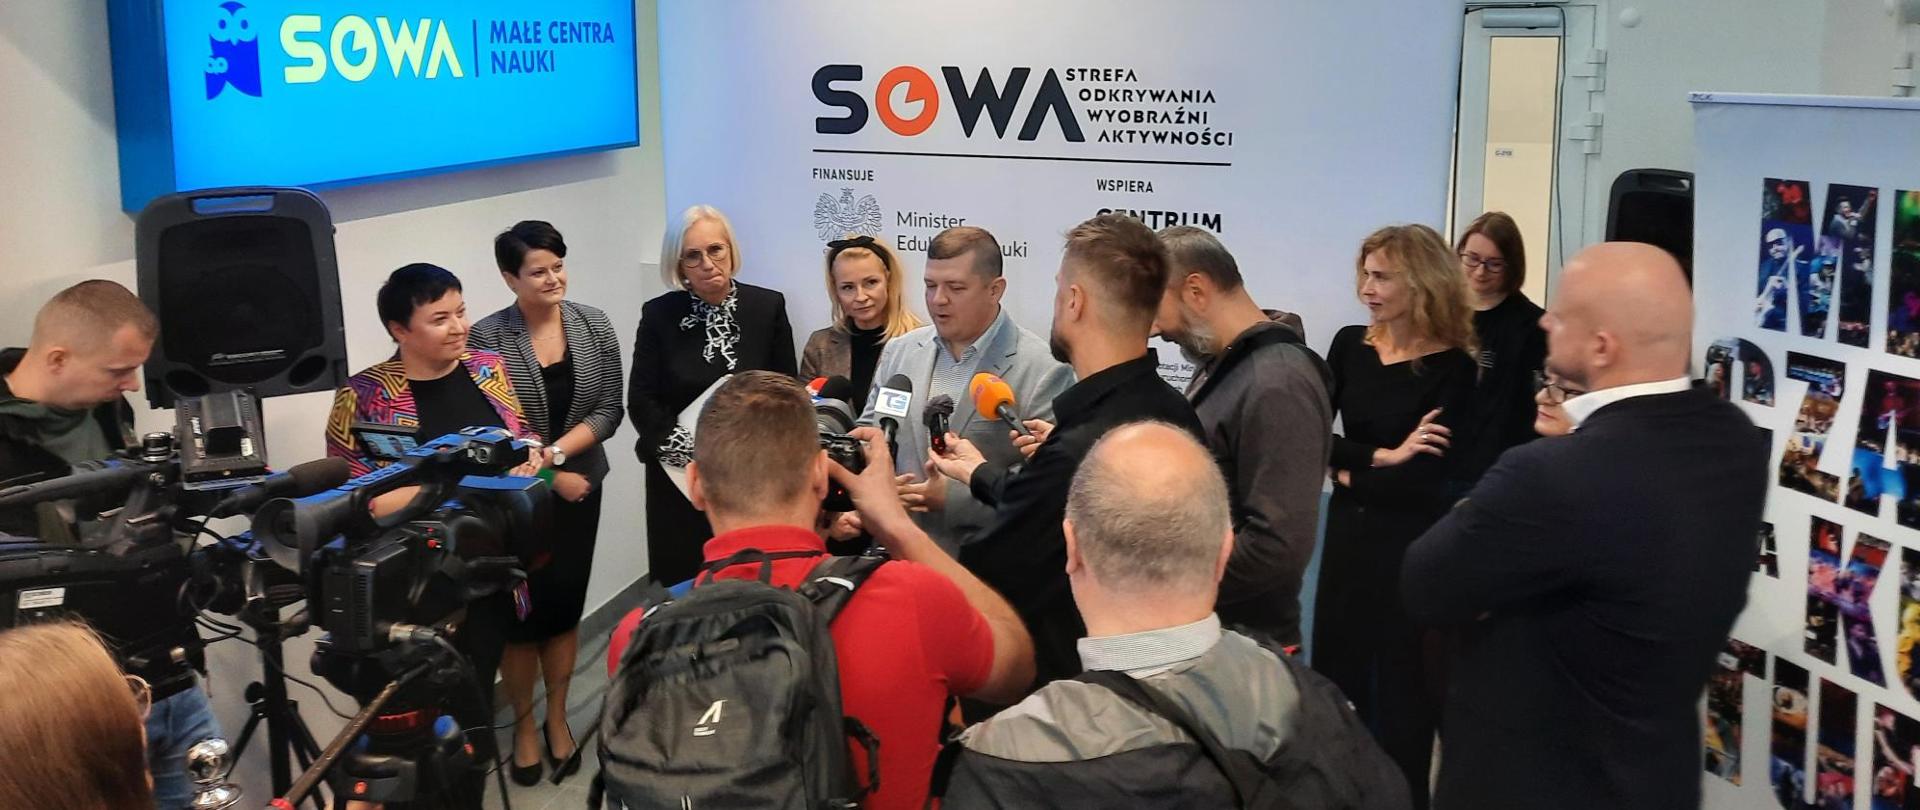 Pod ścianą z napisem SOWA stoi duża grupa ludzi, mężczyzna w szarej marynarce mówi do kilku mikrofonów trzymanych przed dziennikarzy.